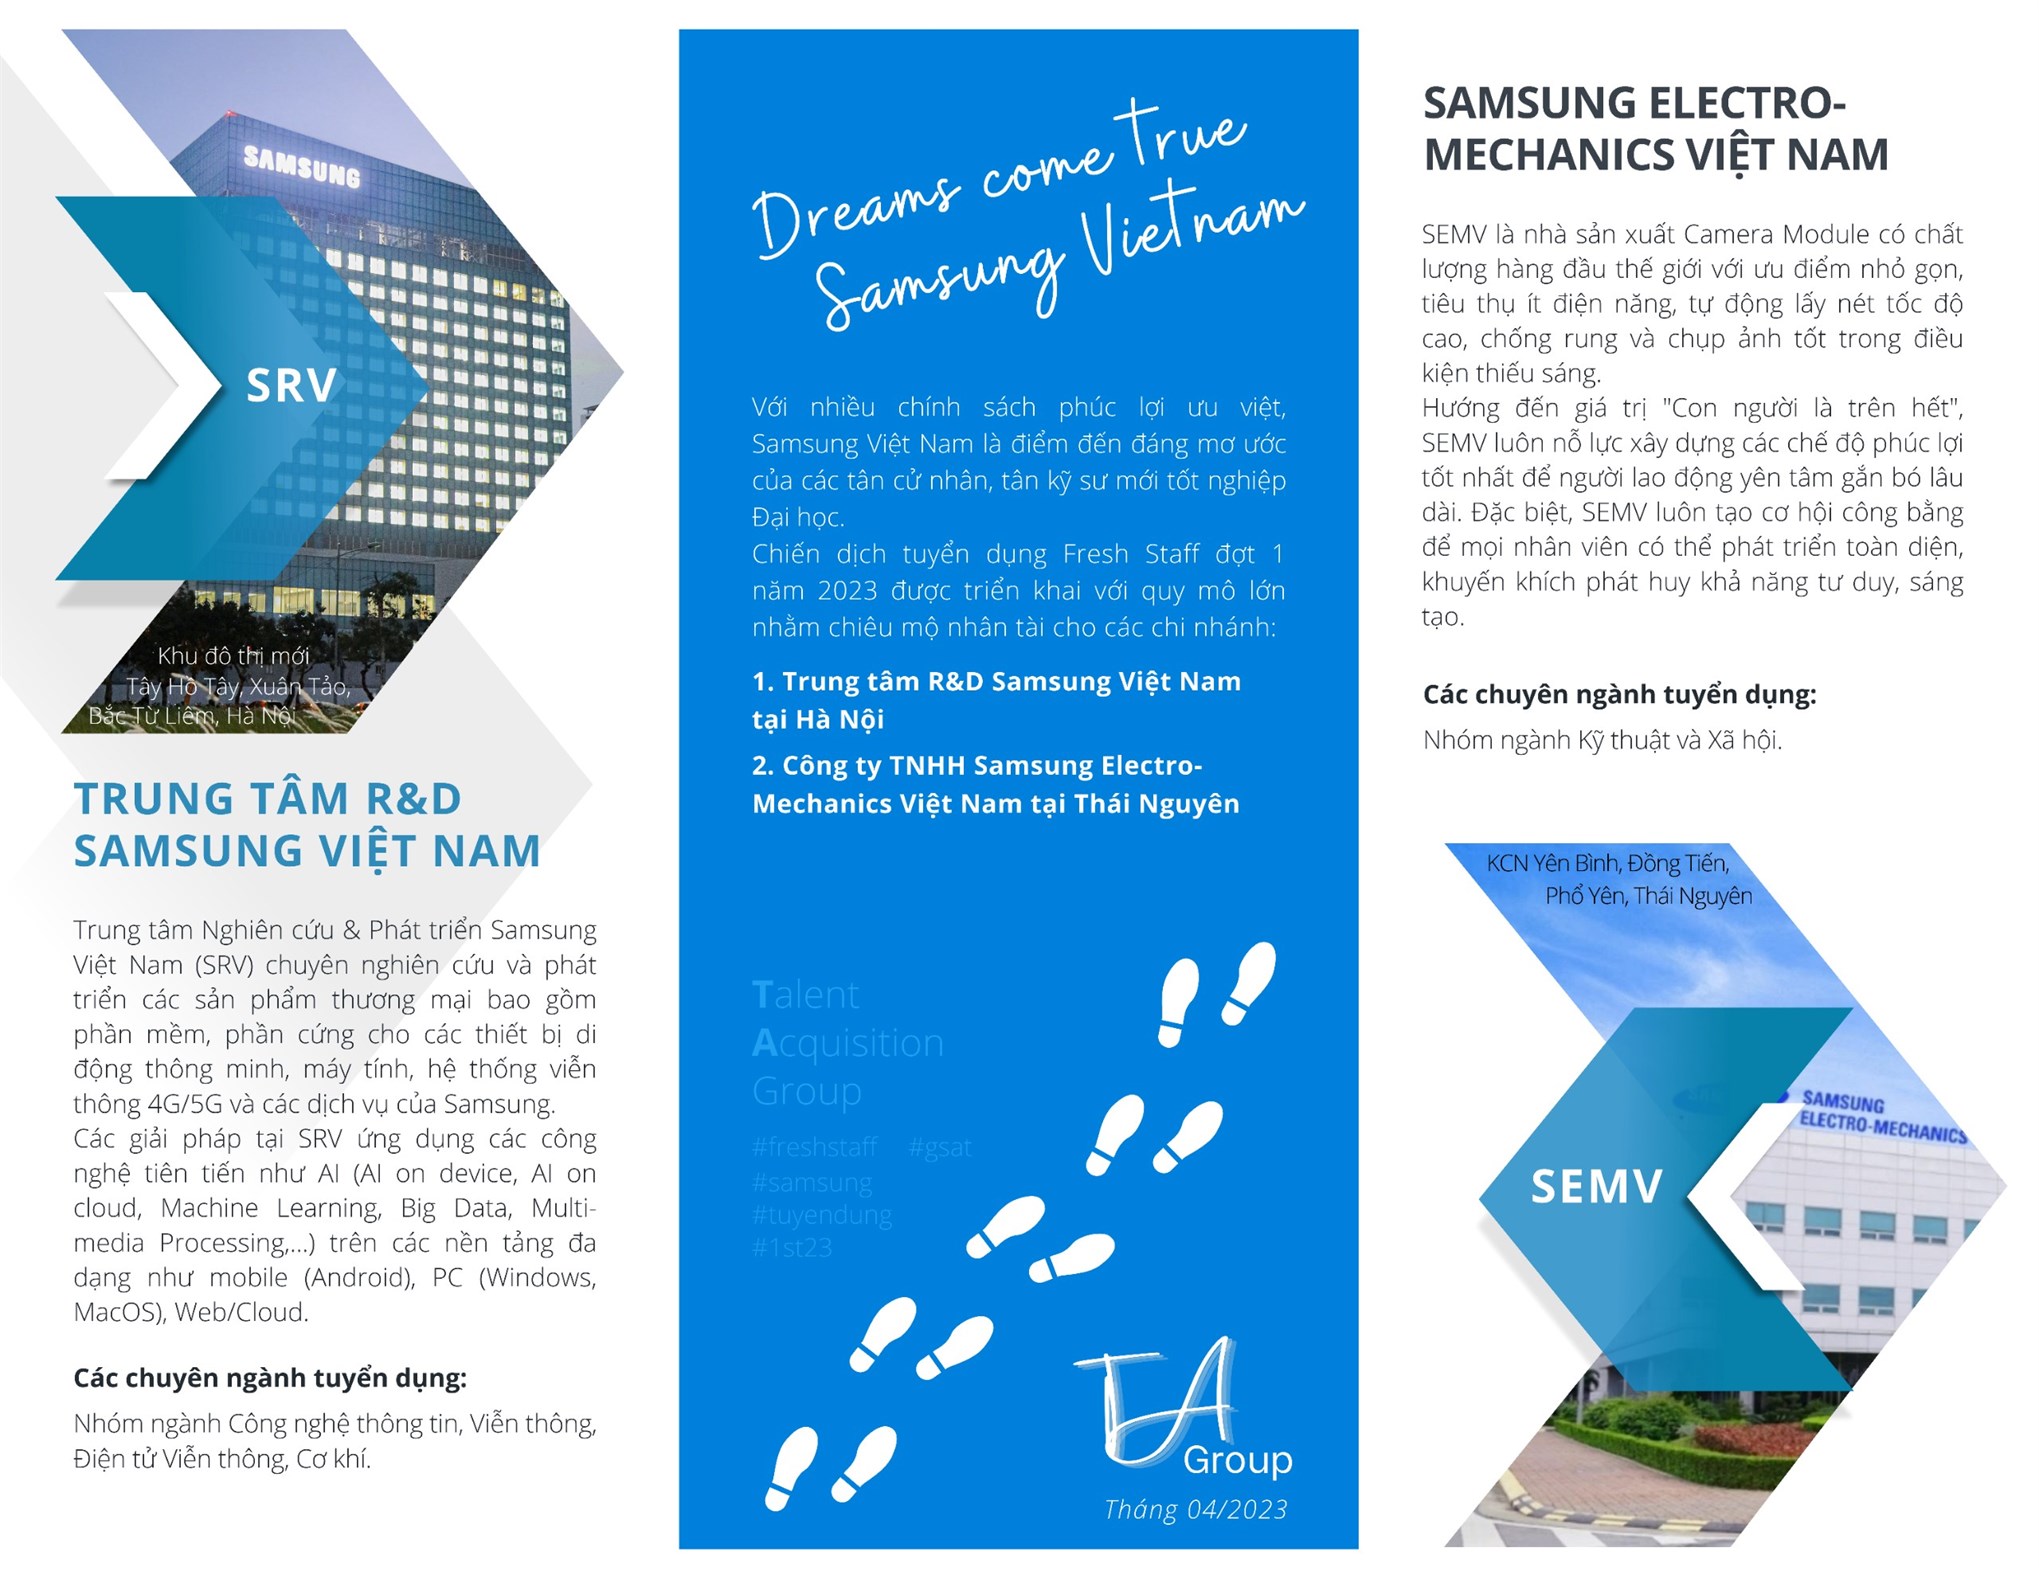 Kế hoạch tổ chức Hội thảo việc làm, hướng nghiệp của Công ty TNHH Samsung Electronics Việt Nam 2023